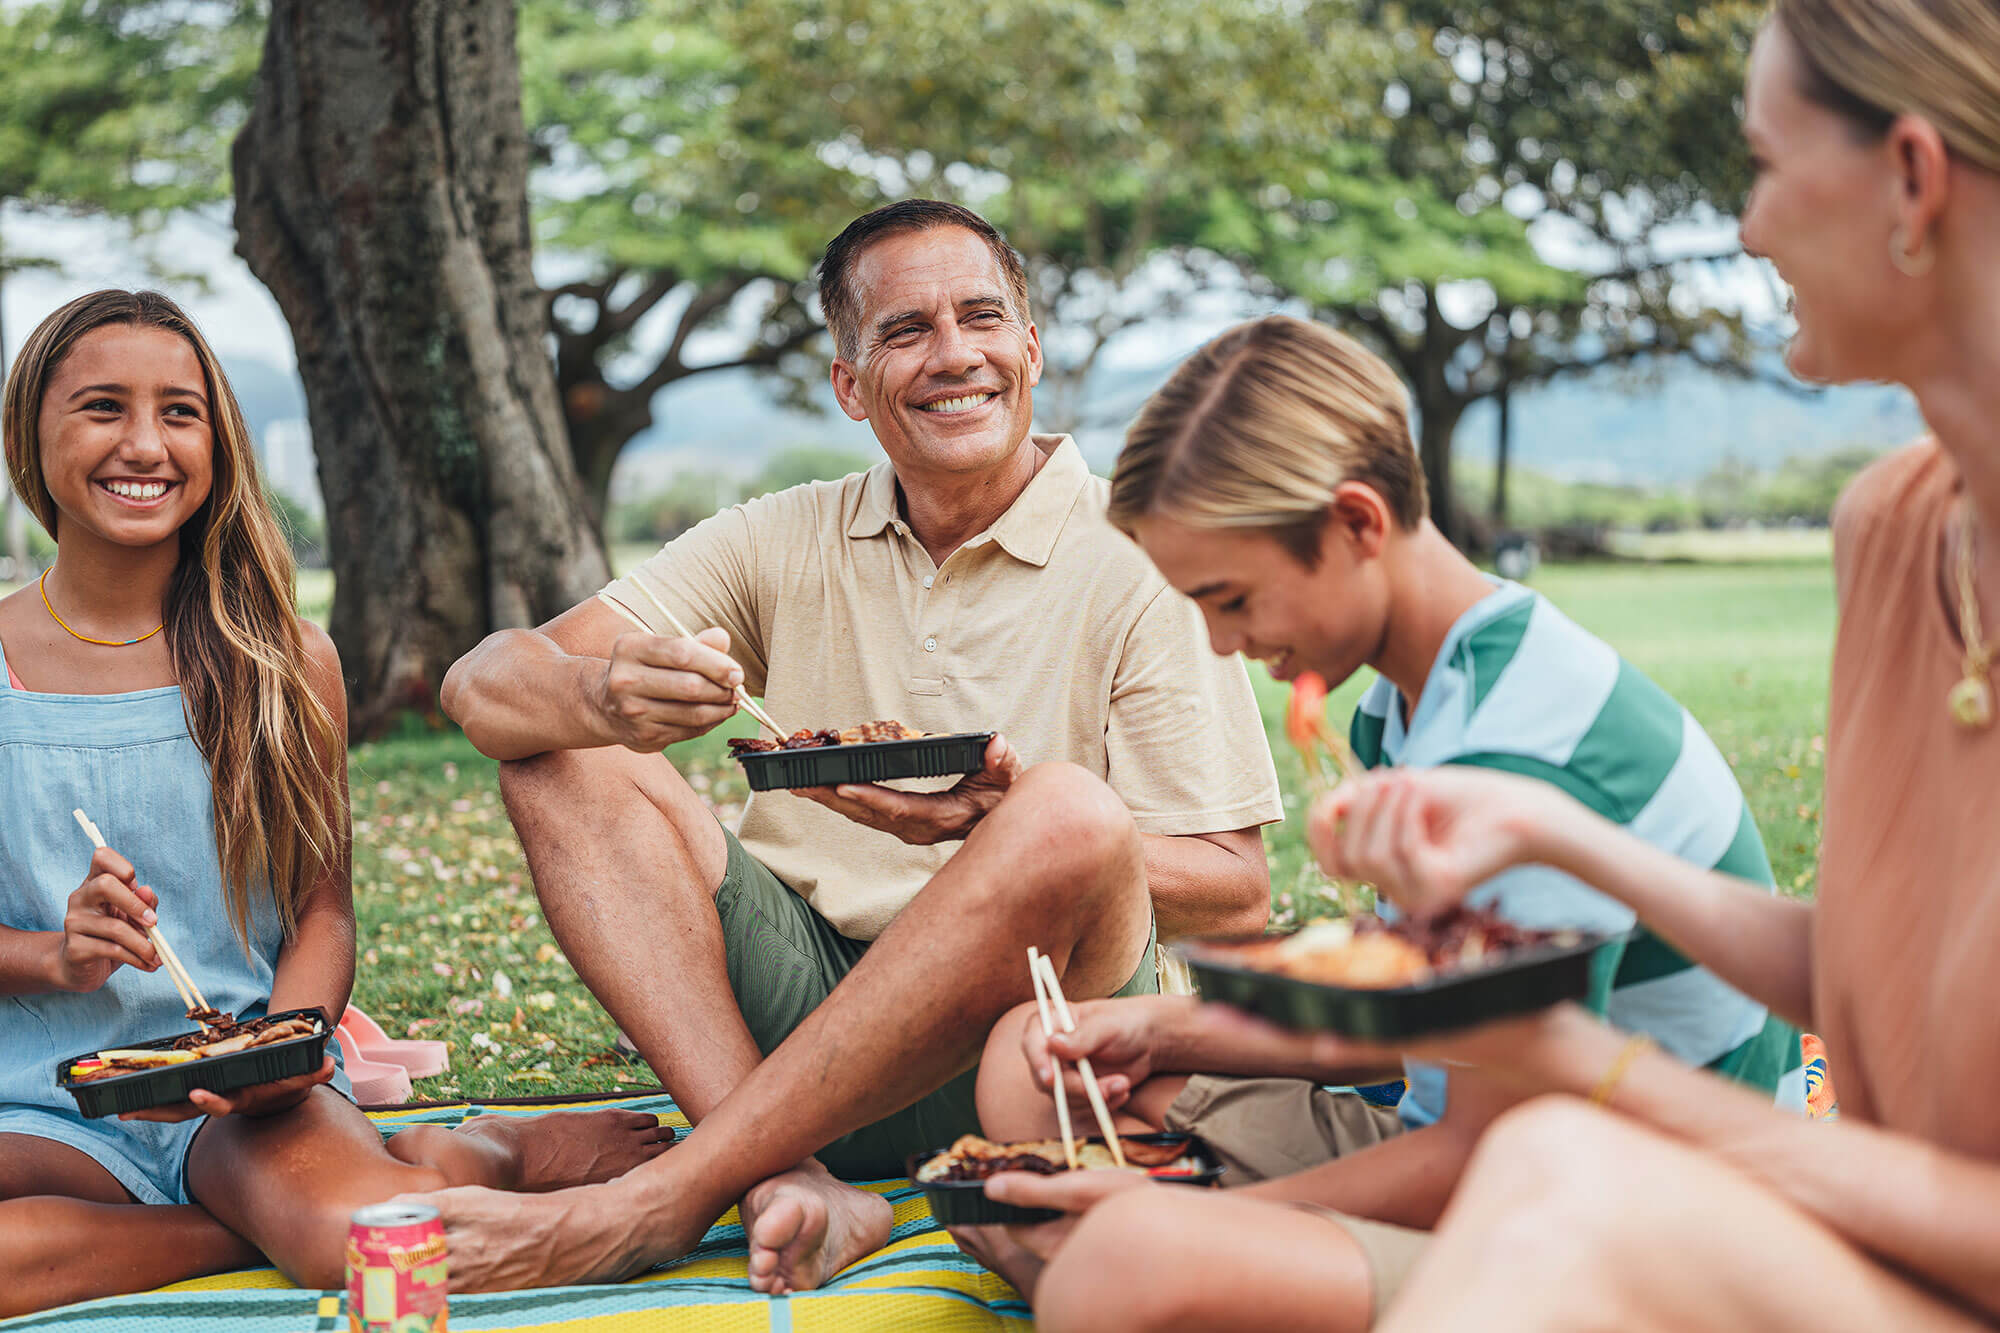 Family enjoying a picnic at the park